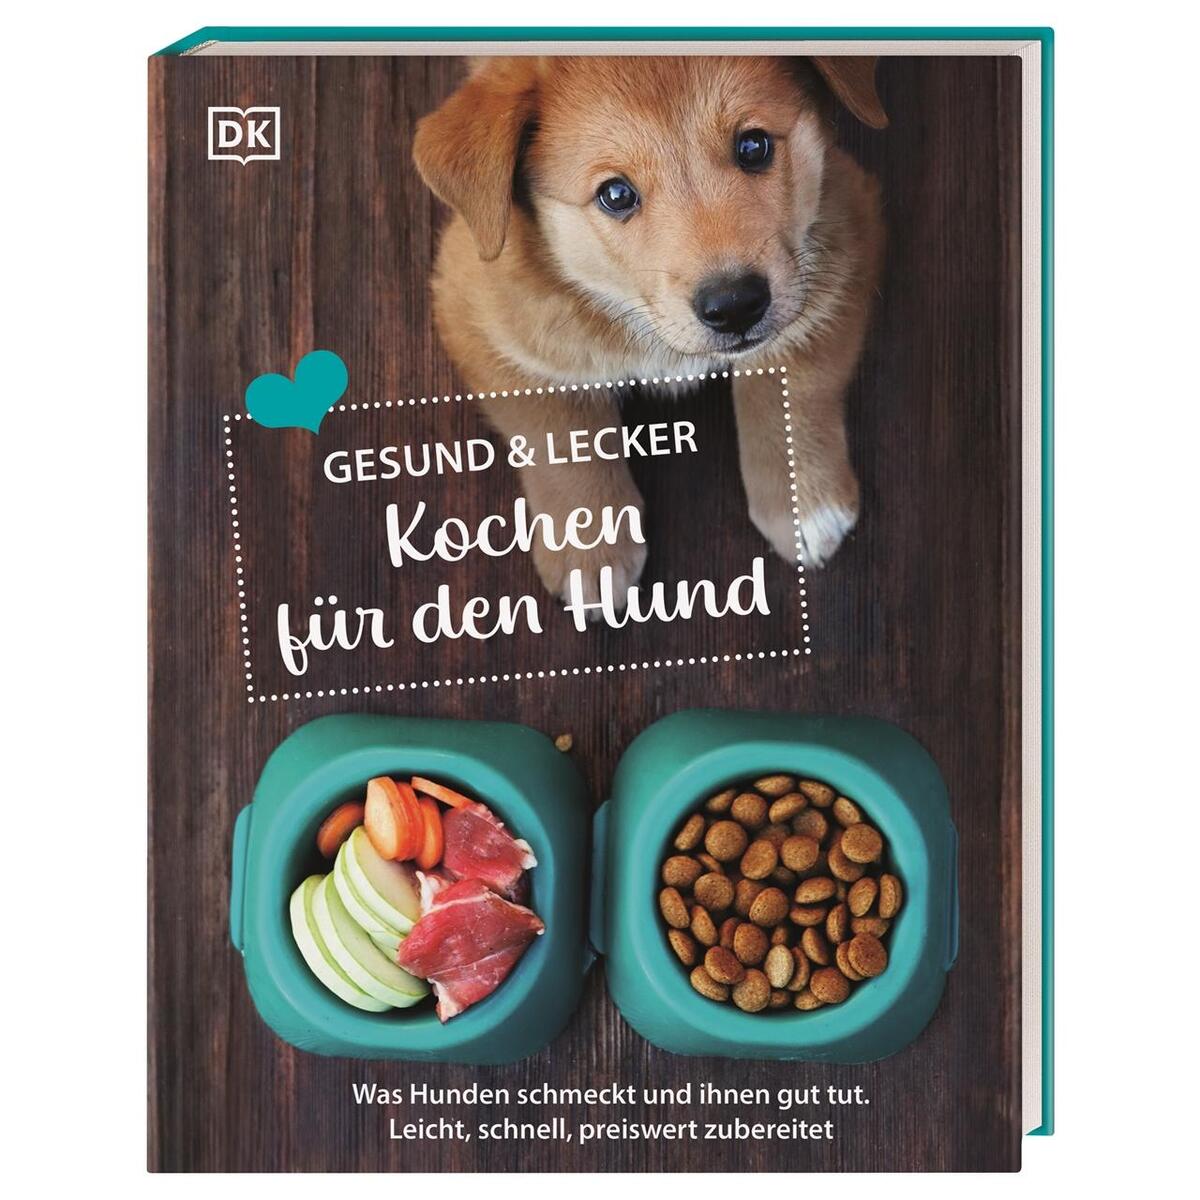 Gesund & lecker: Kochen für den Hund von Dorling Kindersley Verlag